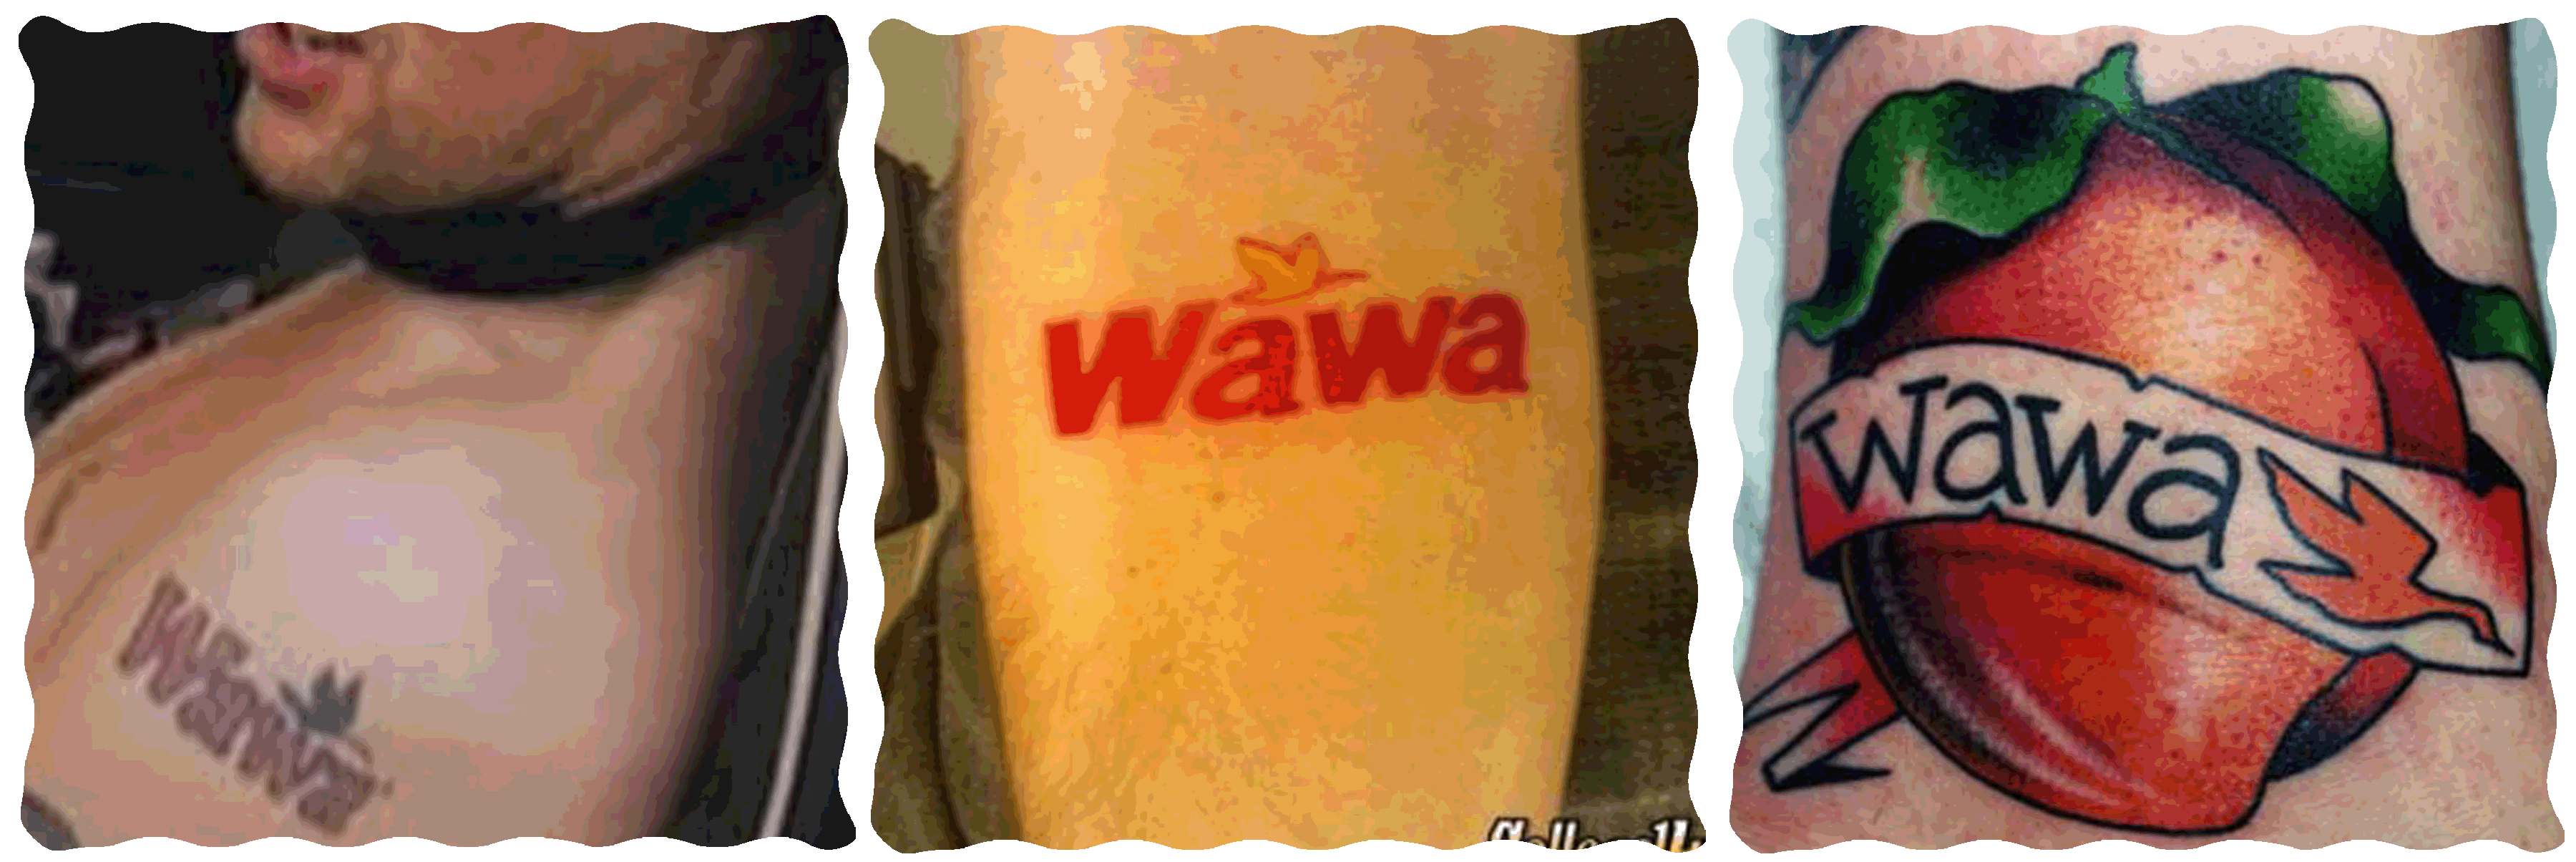 wawatat